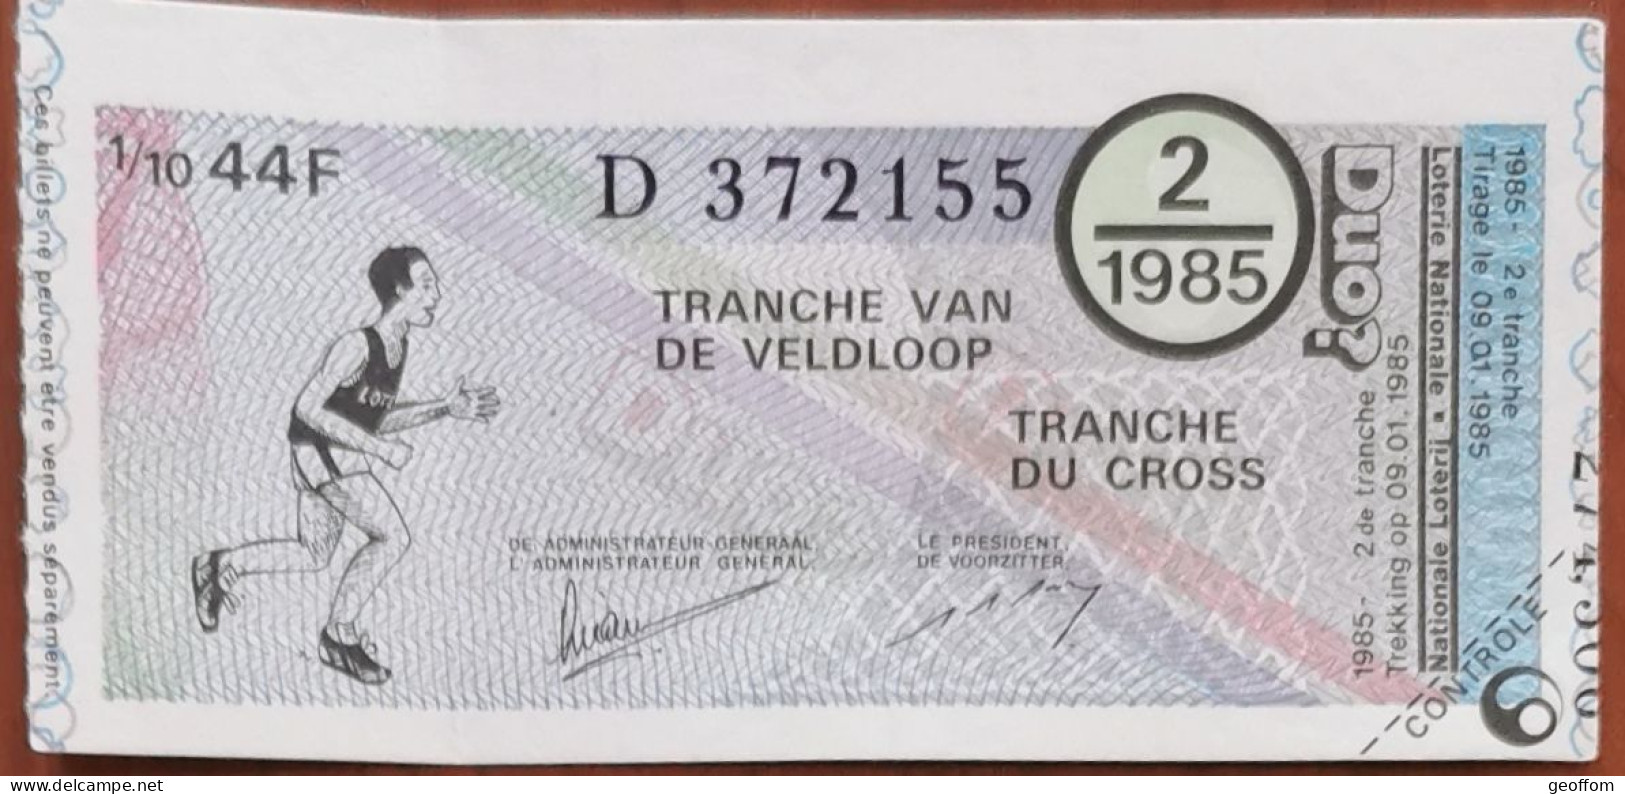 Billet De Loterie Nationale Belgique 1985 2e Tranche Du Cross - 9-1-1985 - Billetes De Lotería